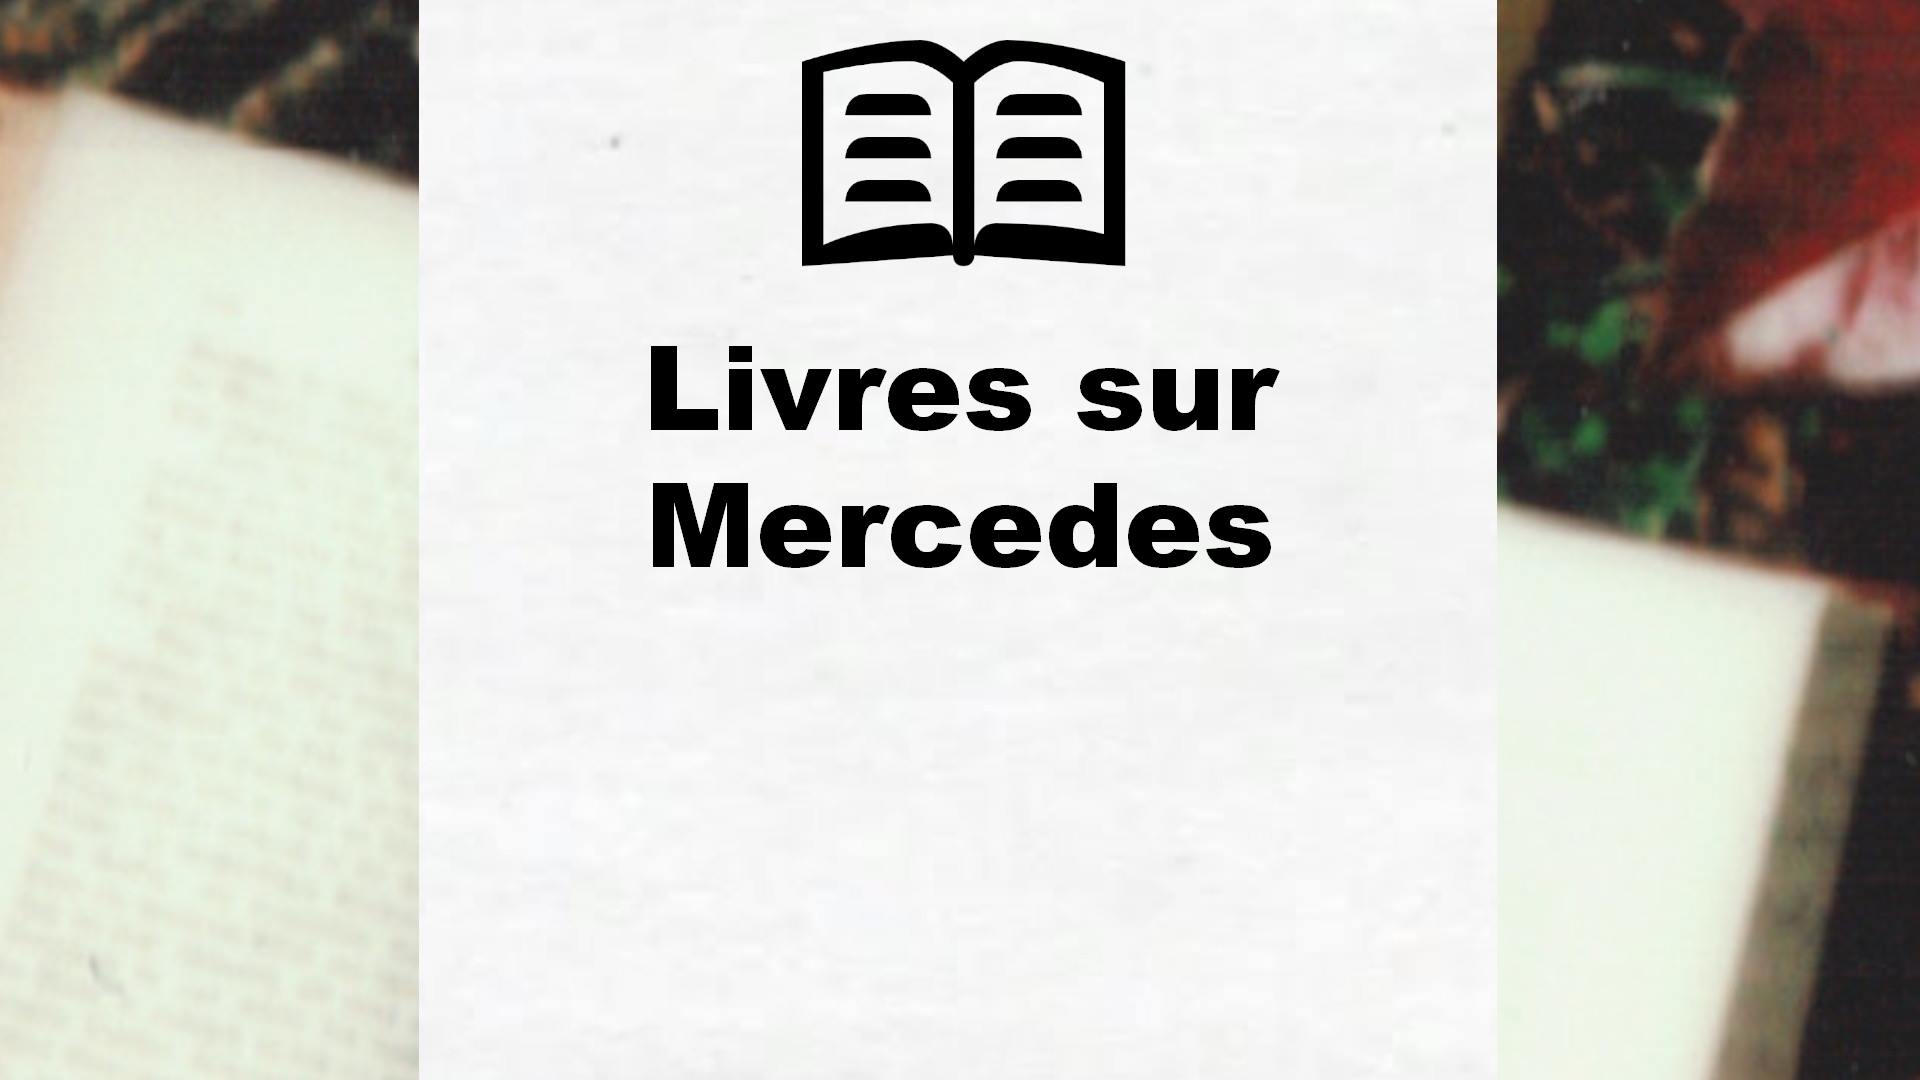 Livres sur Mercedes